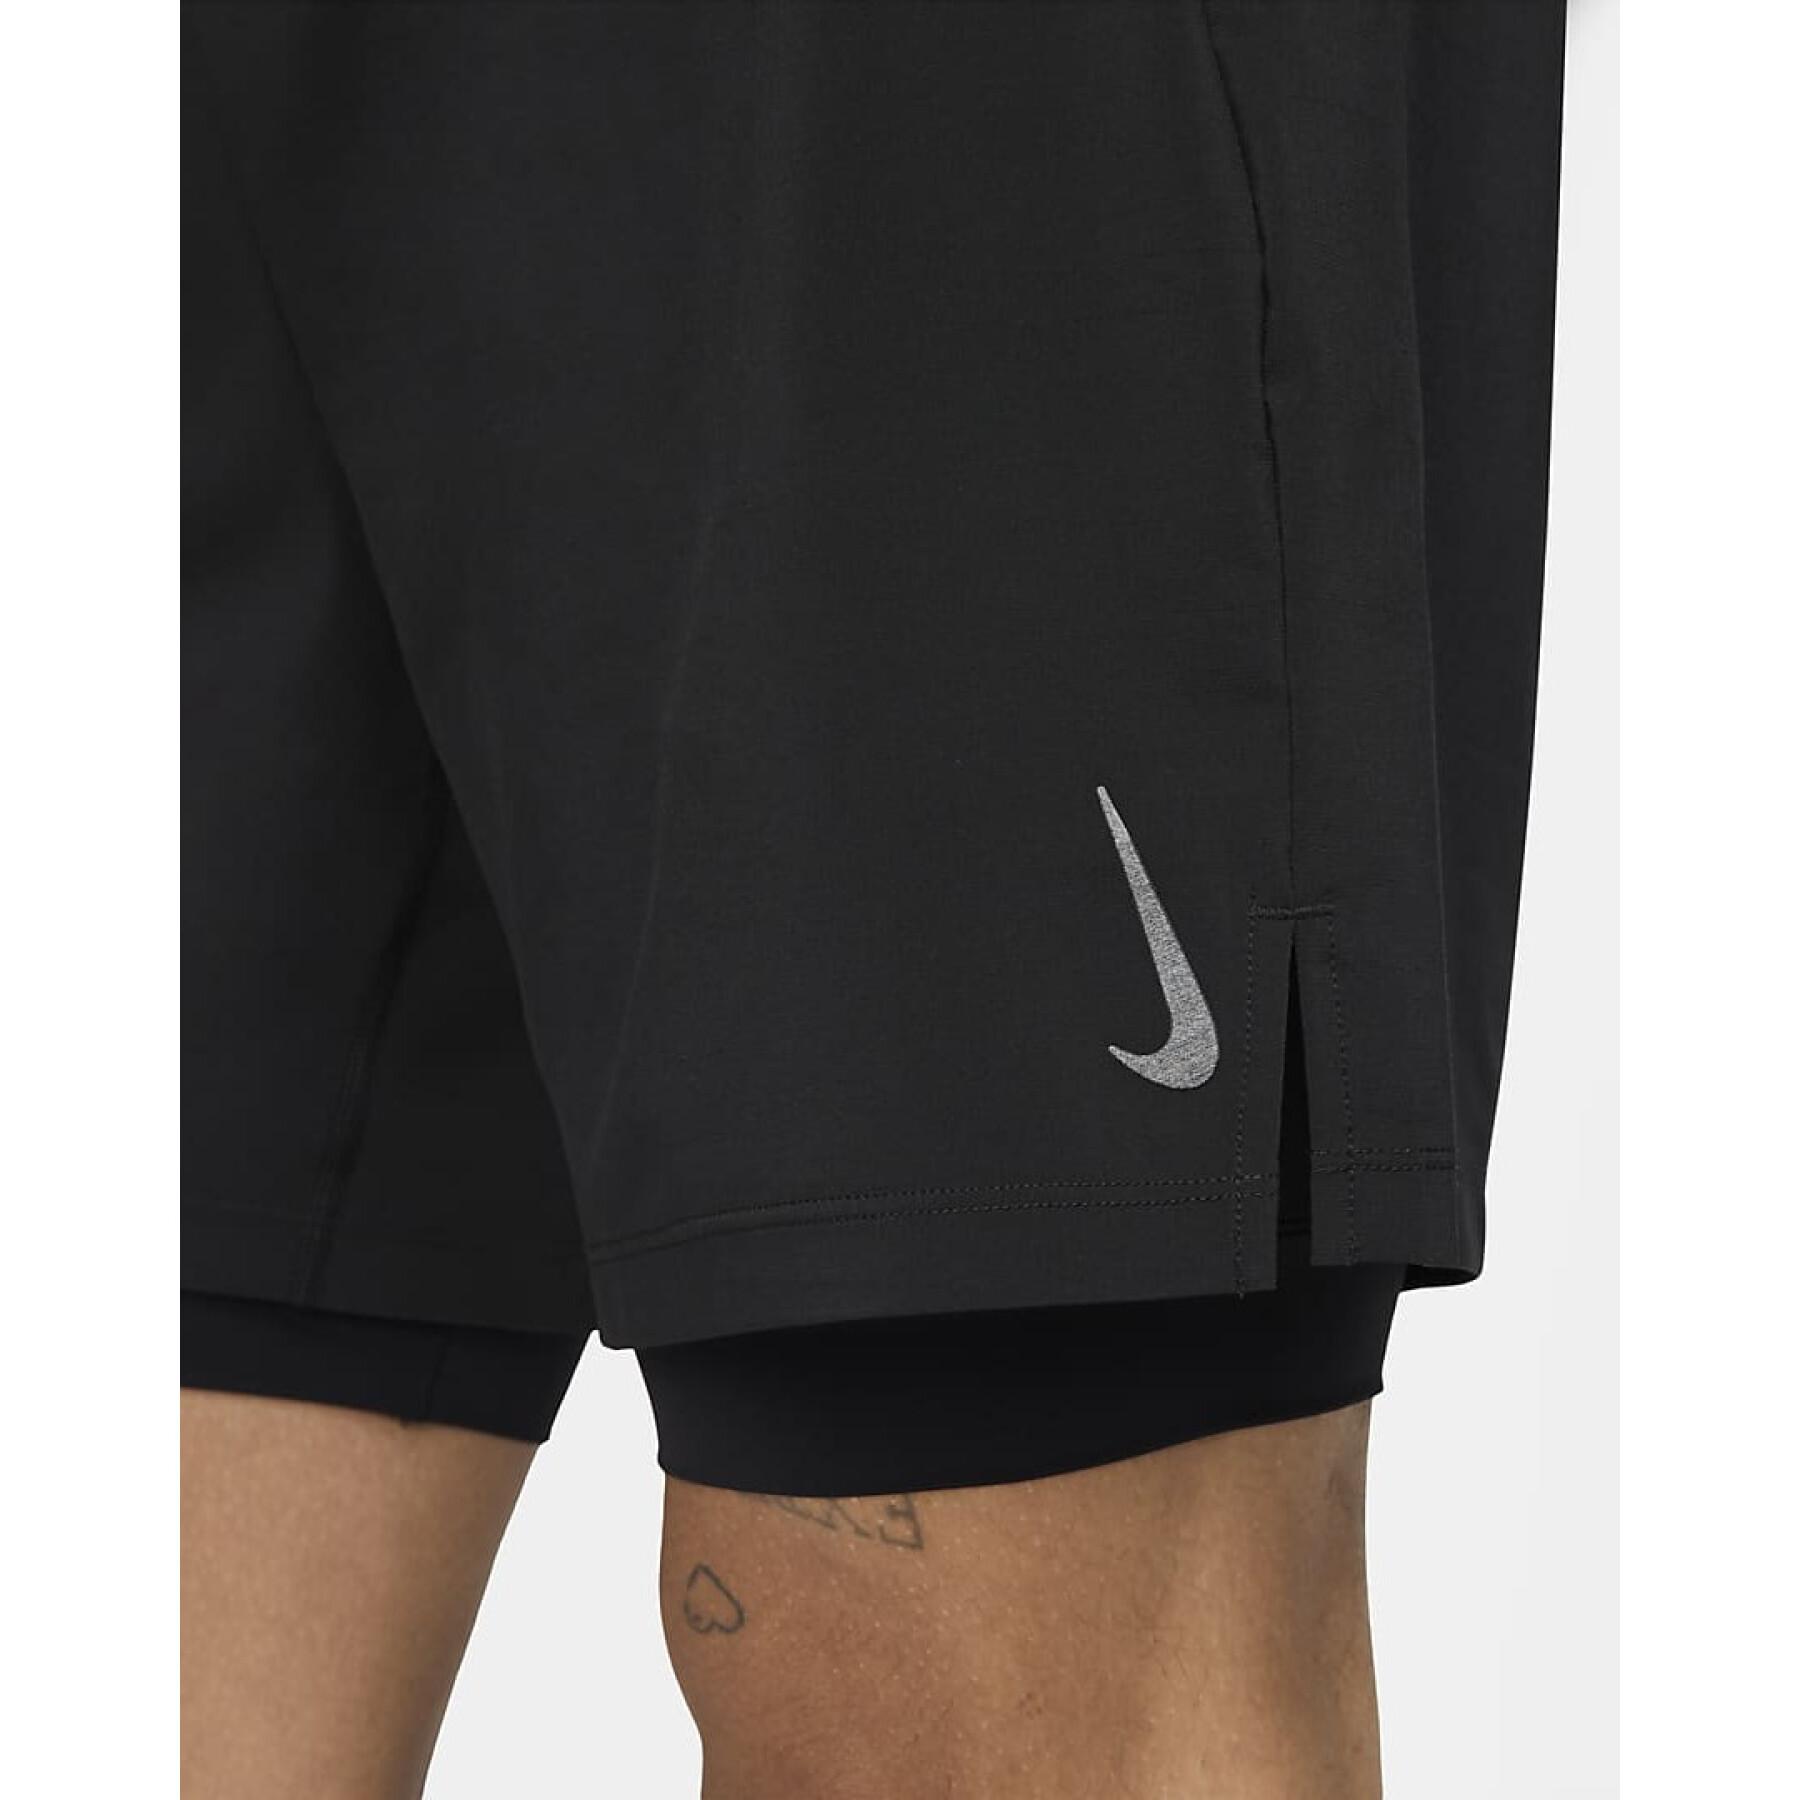 2 in 1 Shorts Nike Yoga